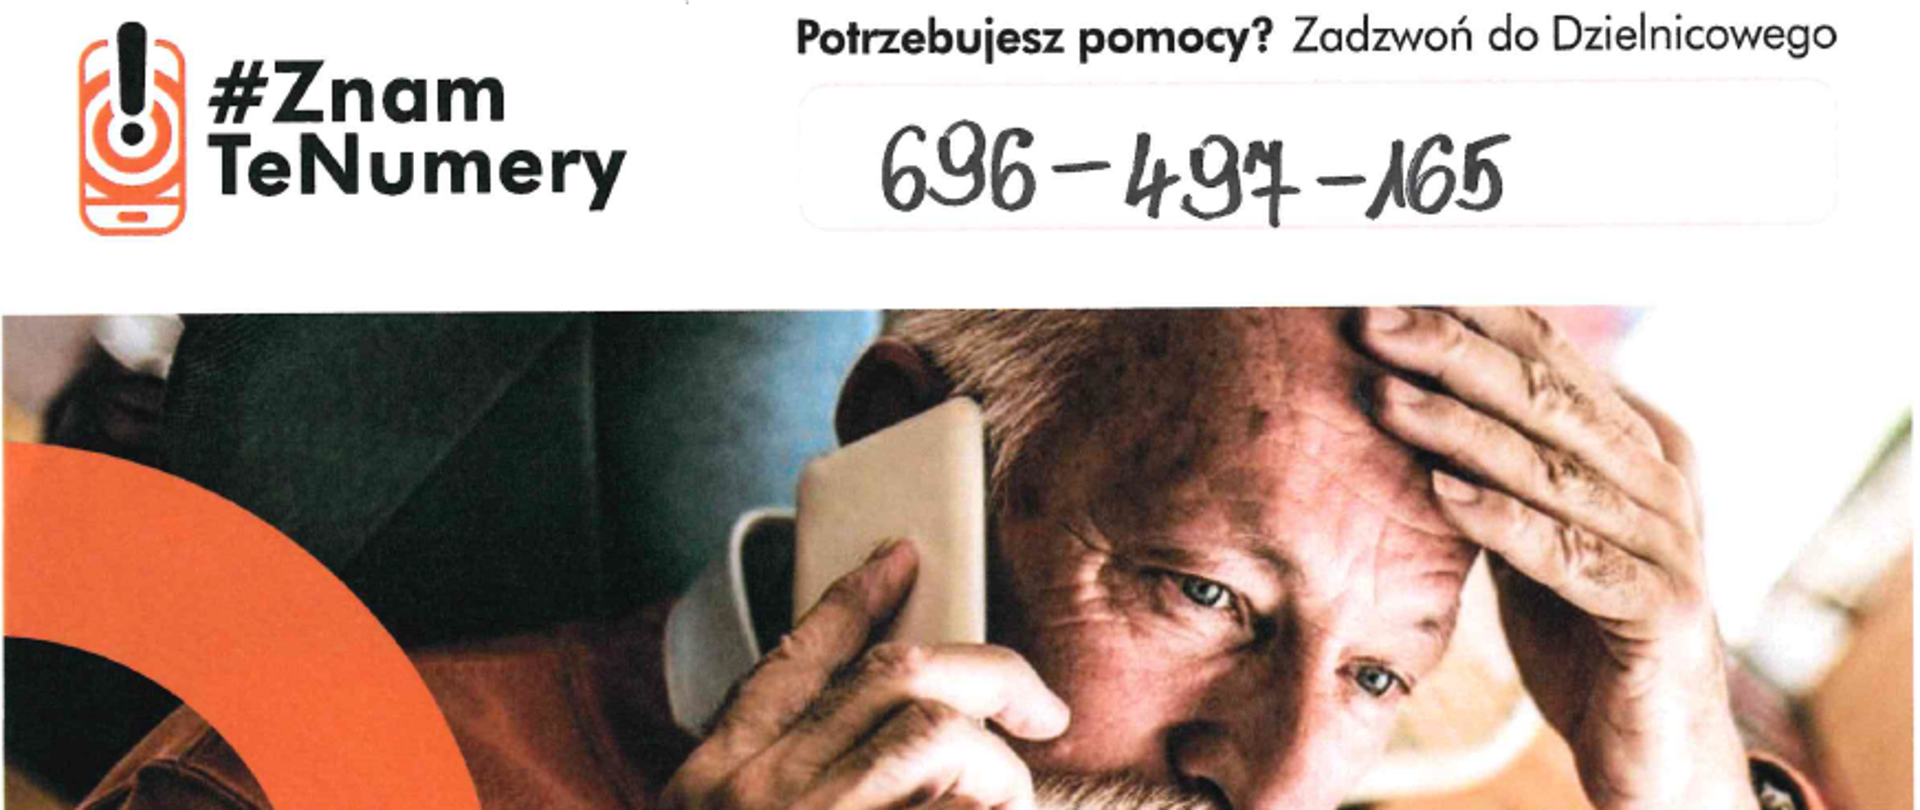 Plakat przestawia seniora z telefonem komórkowym i numerem Dzielnicowego